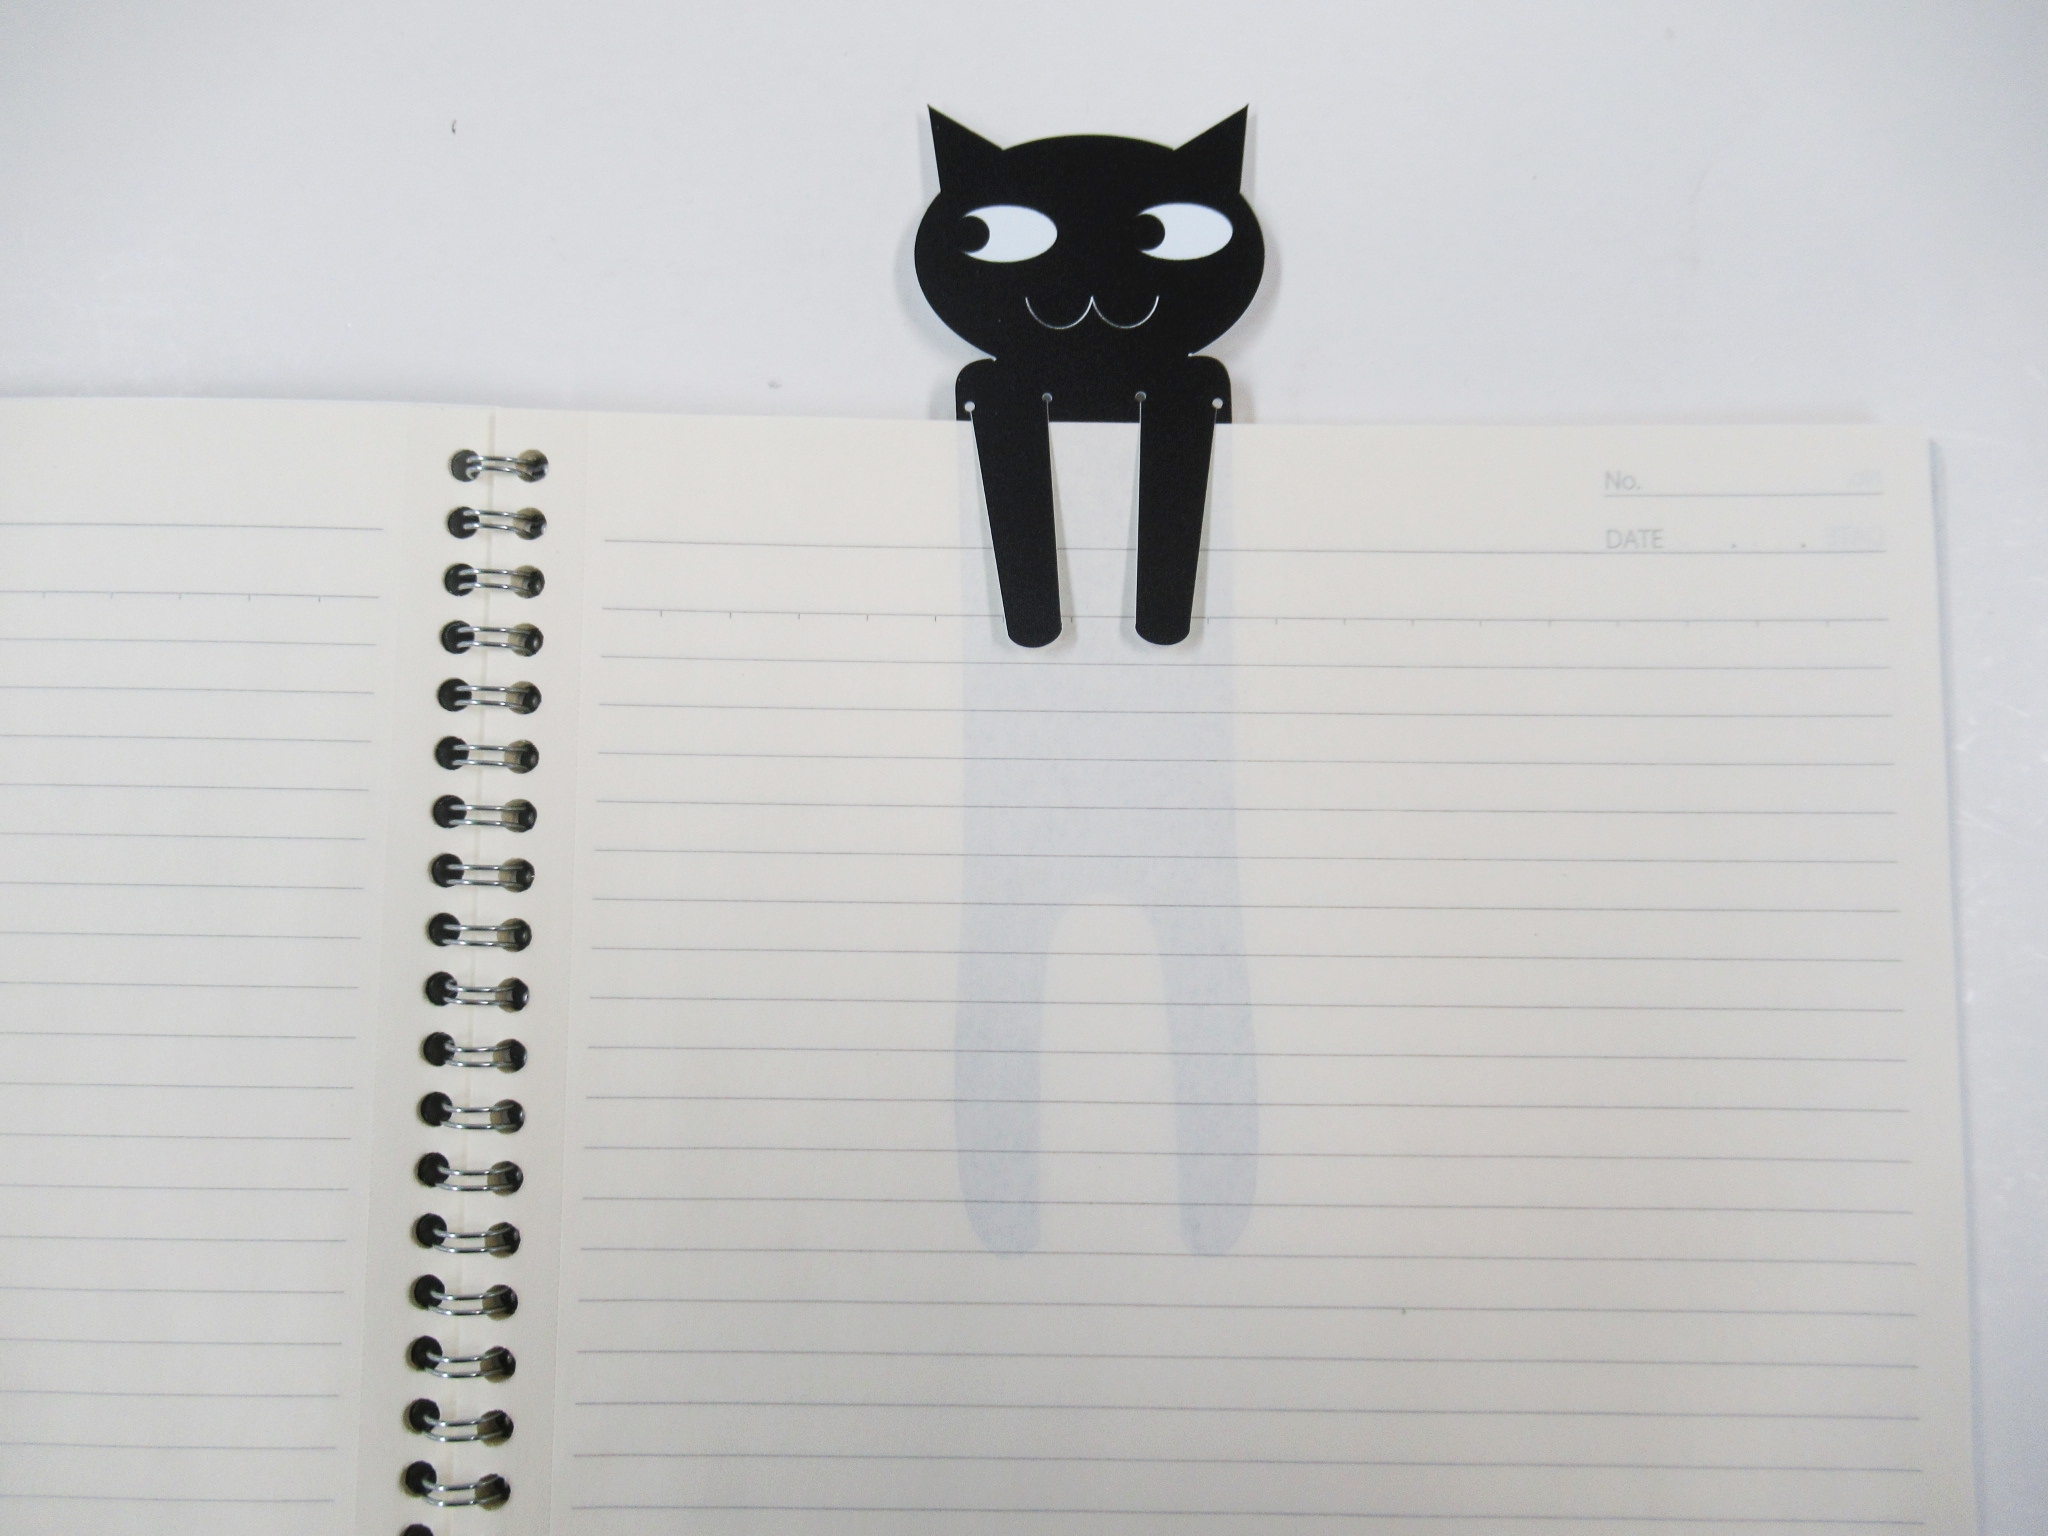  чёрный кошка Kuroneko плёнка зажим рекламная закладка 4 шт. комплект . книжка Mark книжка маркер (габарит) .. кошка кошка животное животное популярный модный симпатичный смешанные товары сделано в Японии 